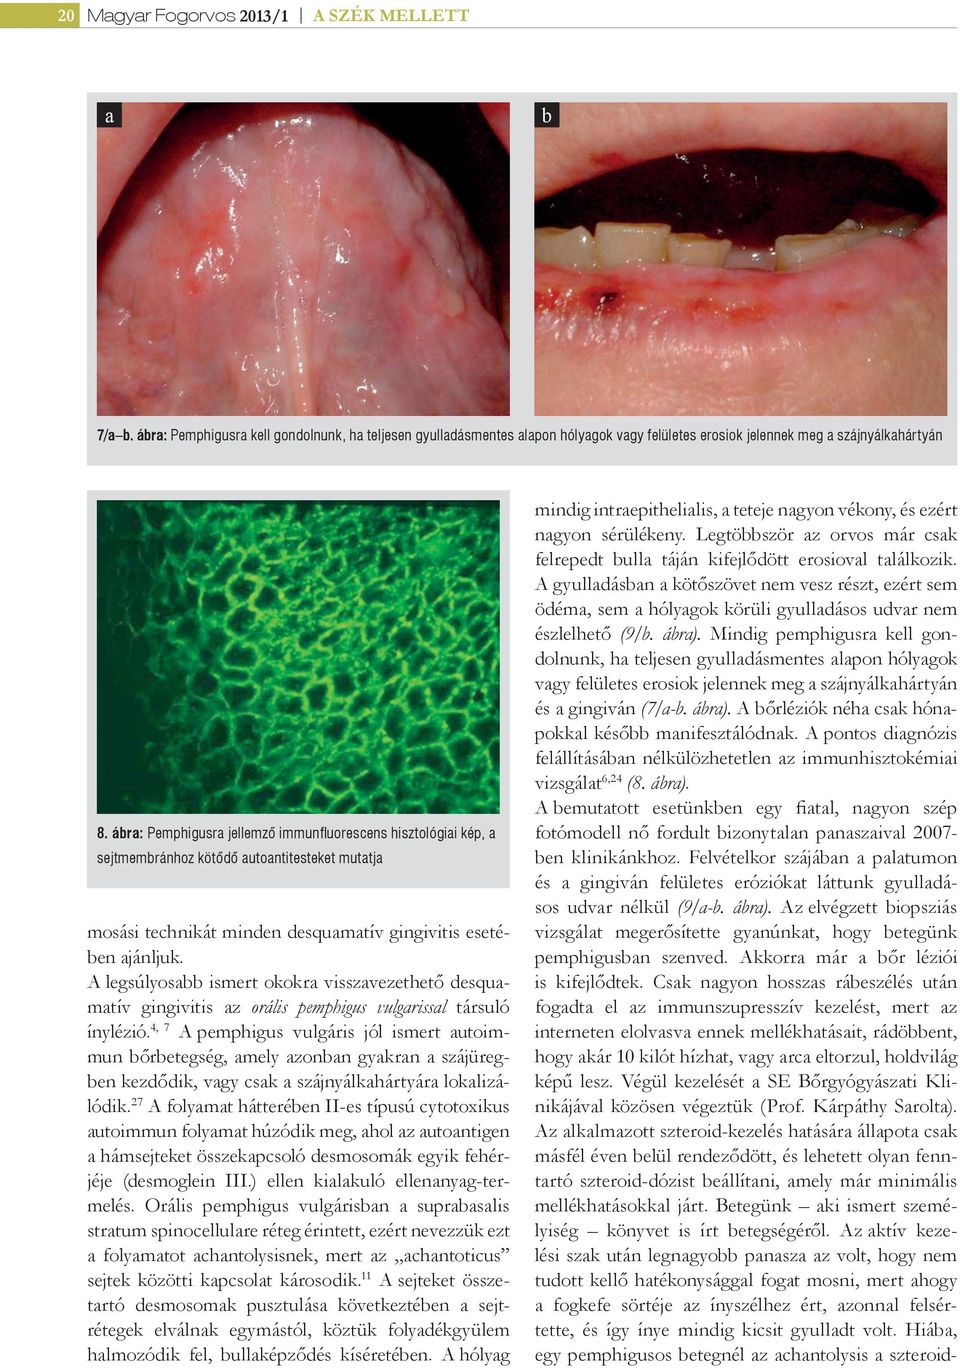 A legsúlyosabb ismert okokra visszavezethető desquamatív gingivitis az orális pemphigus vulgarissal társuló ínylézió.